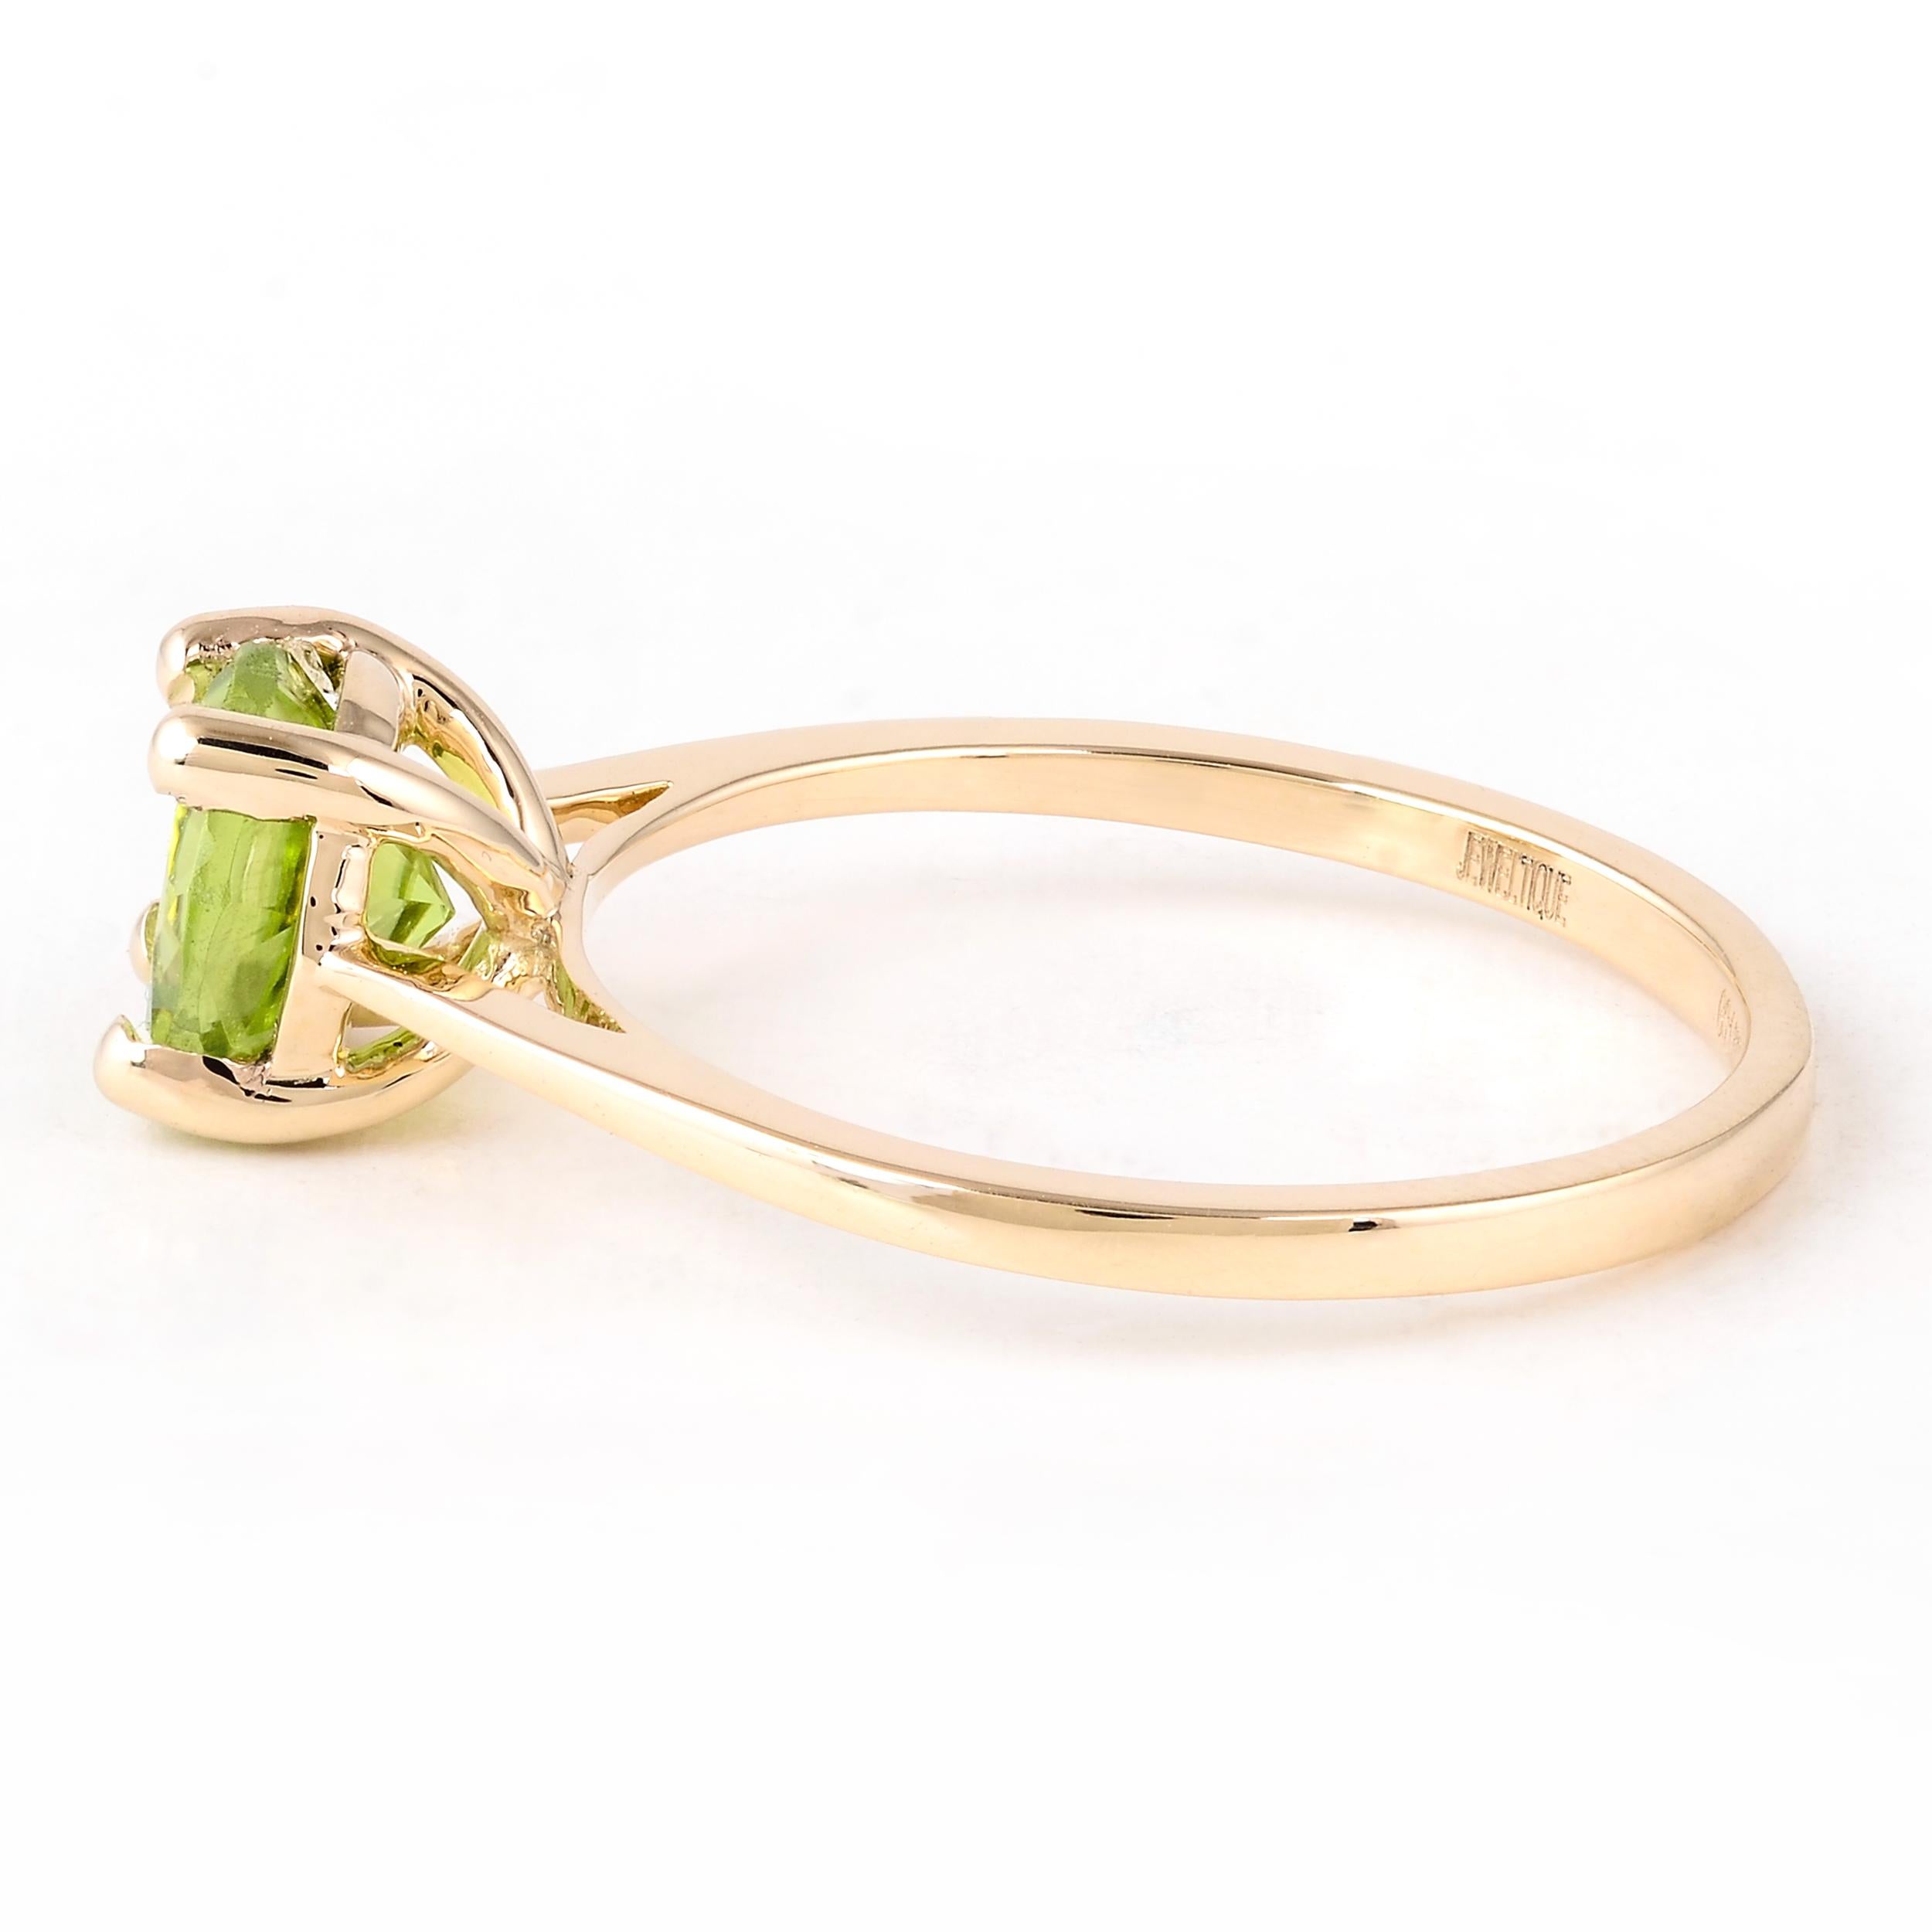 Erhöhen Sie Ihren Stil mit der heiteren Eleganz unseres Rings Harmony in Green Peridot. Dieser exquisite Ring, ein Meisterwerk der Marke, fängt die Schönheit der Natur und die Ruhe, die sie bringt, ein. Dieser mit viel Liebe zum Detail gefertigte